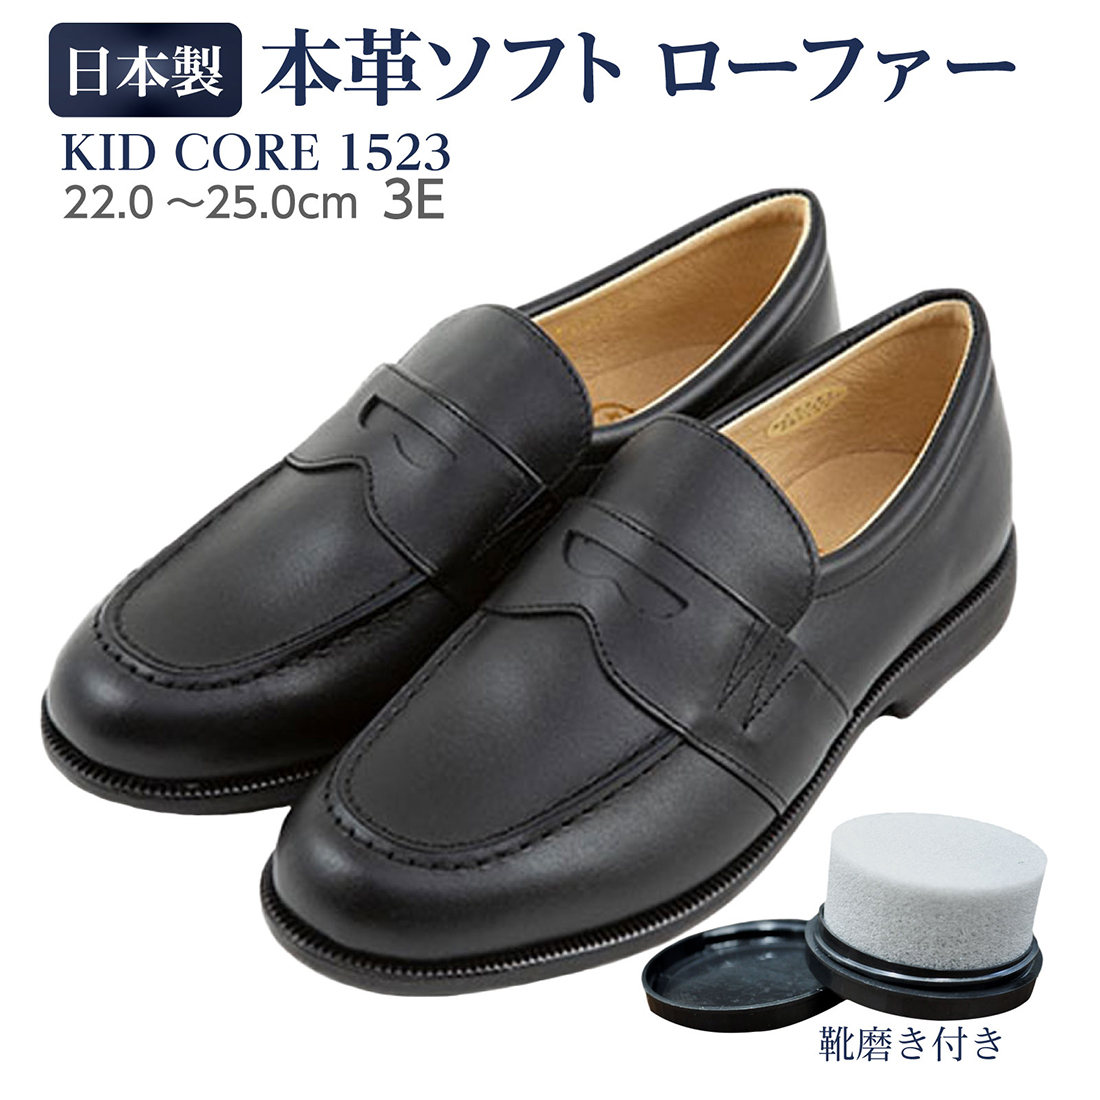 【楽天市場】百貨店取扱い 正規品 KID CORE キッドコア 靴